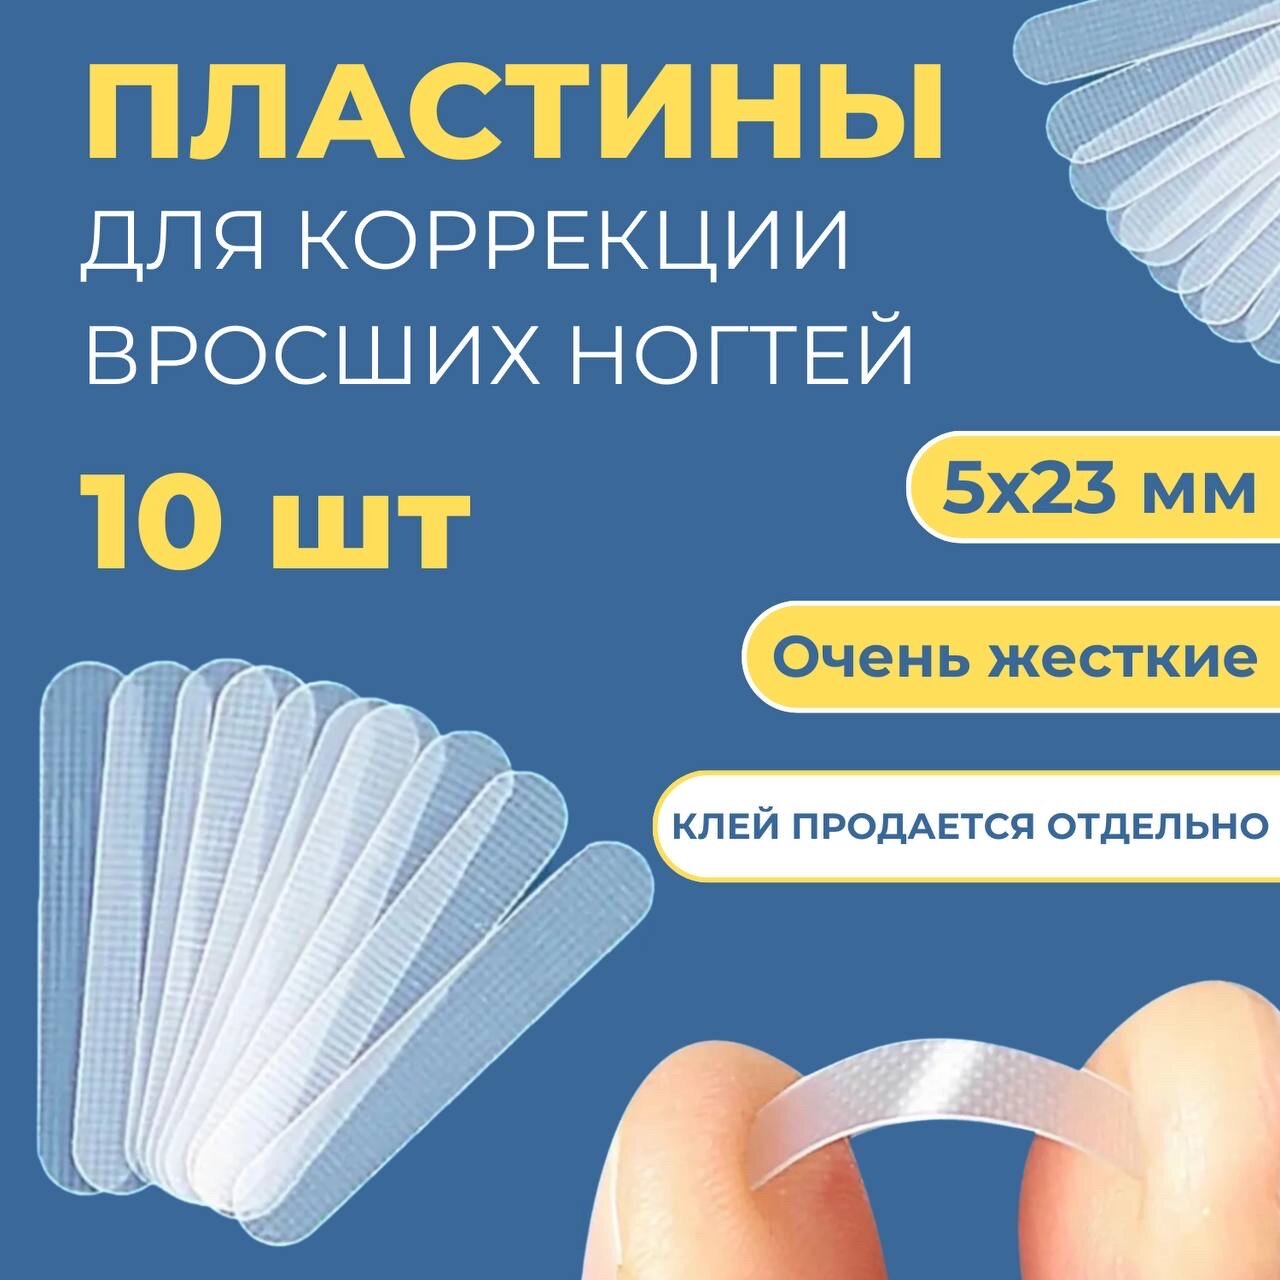 Пластинки для коррекции ногтей очень жесткие, 5*23 мм, 10 шт